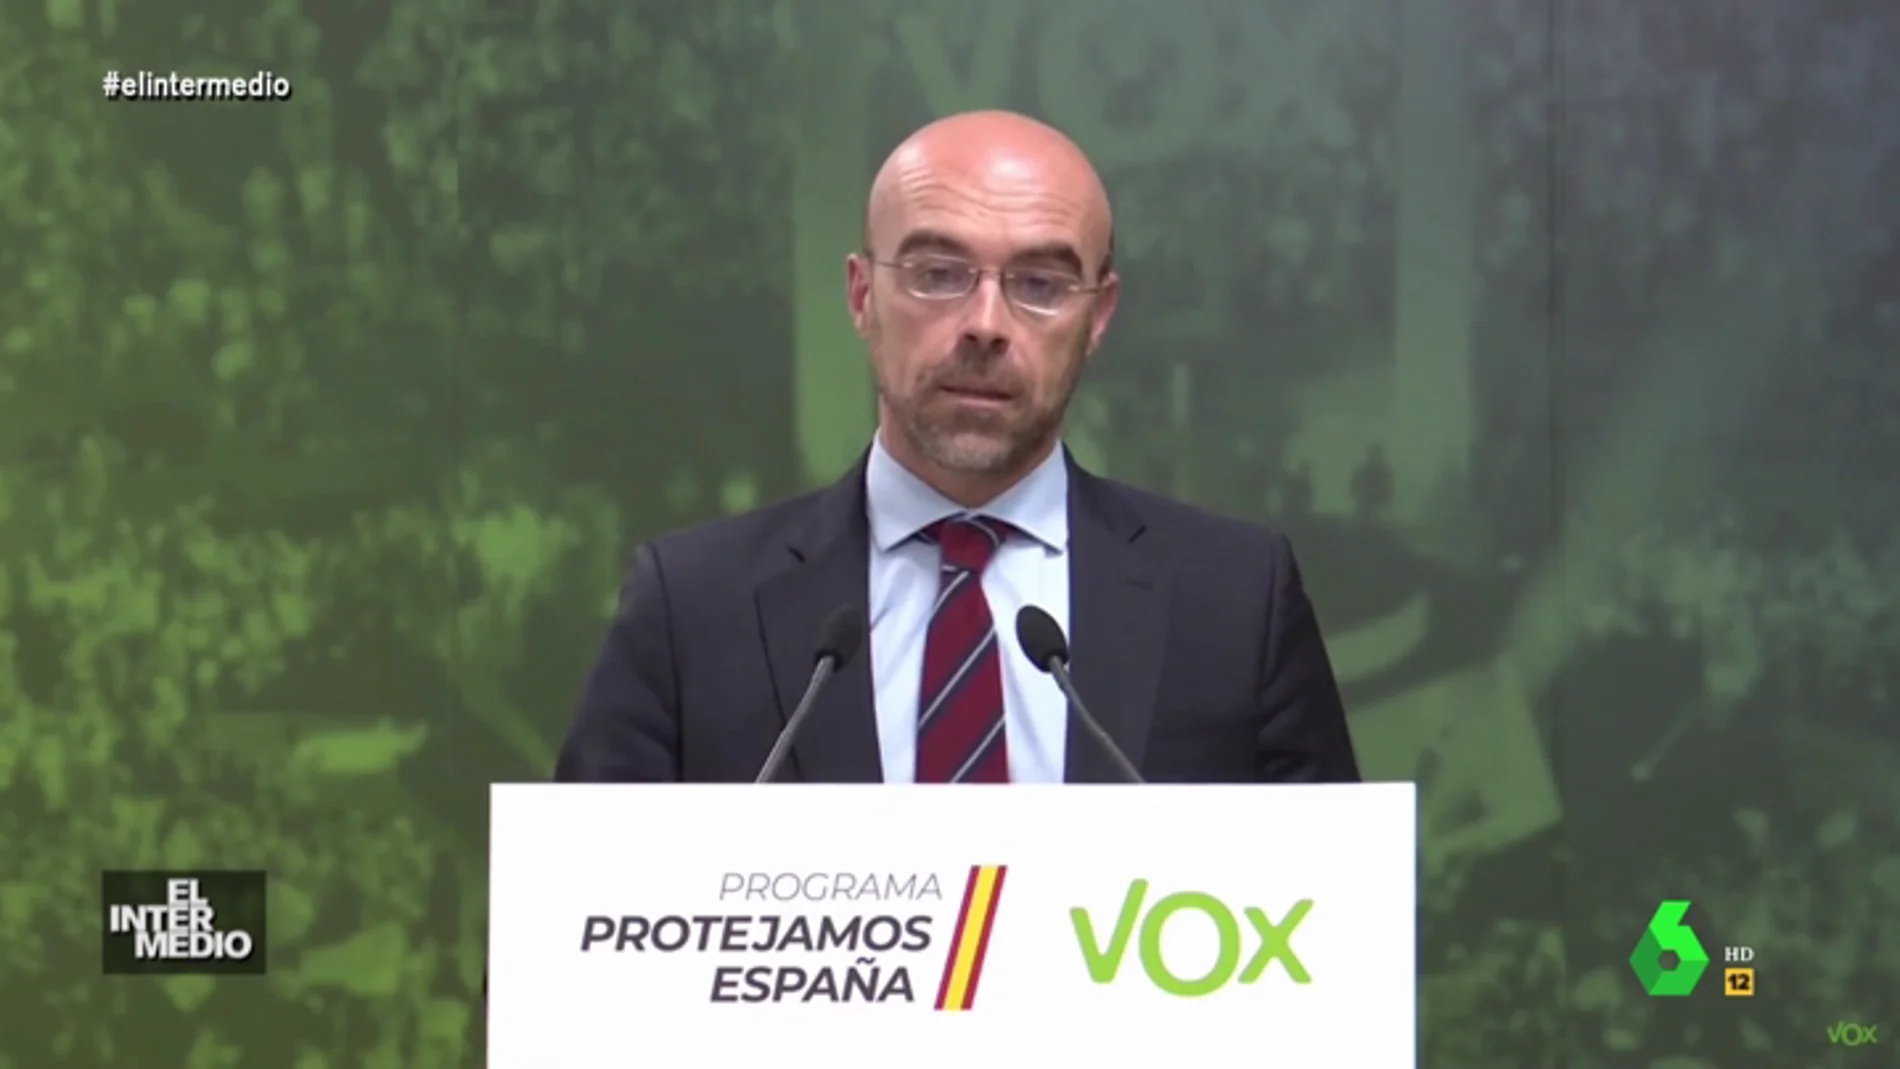 Vídeo manipulado - El "claro discurso" del portavoz de Vox Jorge Buxadé 'a lo Antonio Ozores'